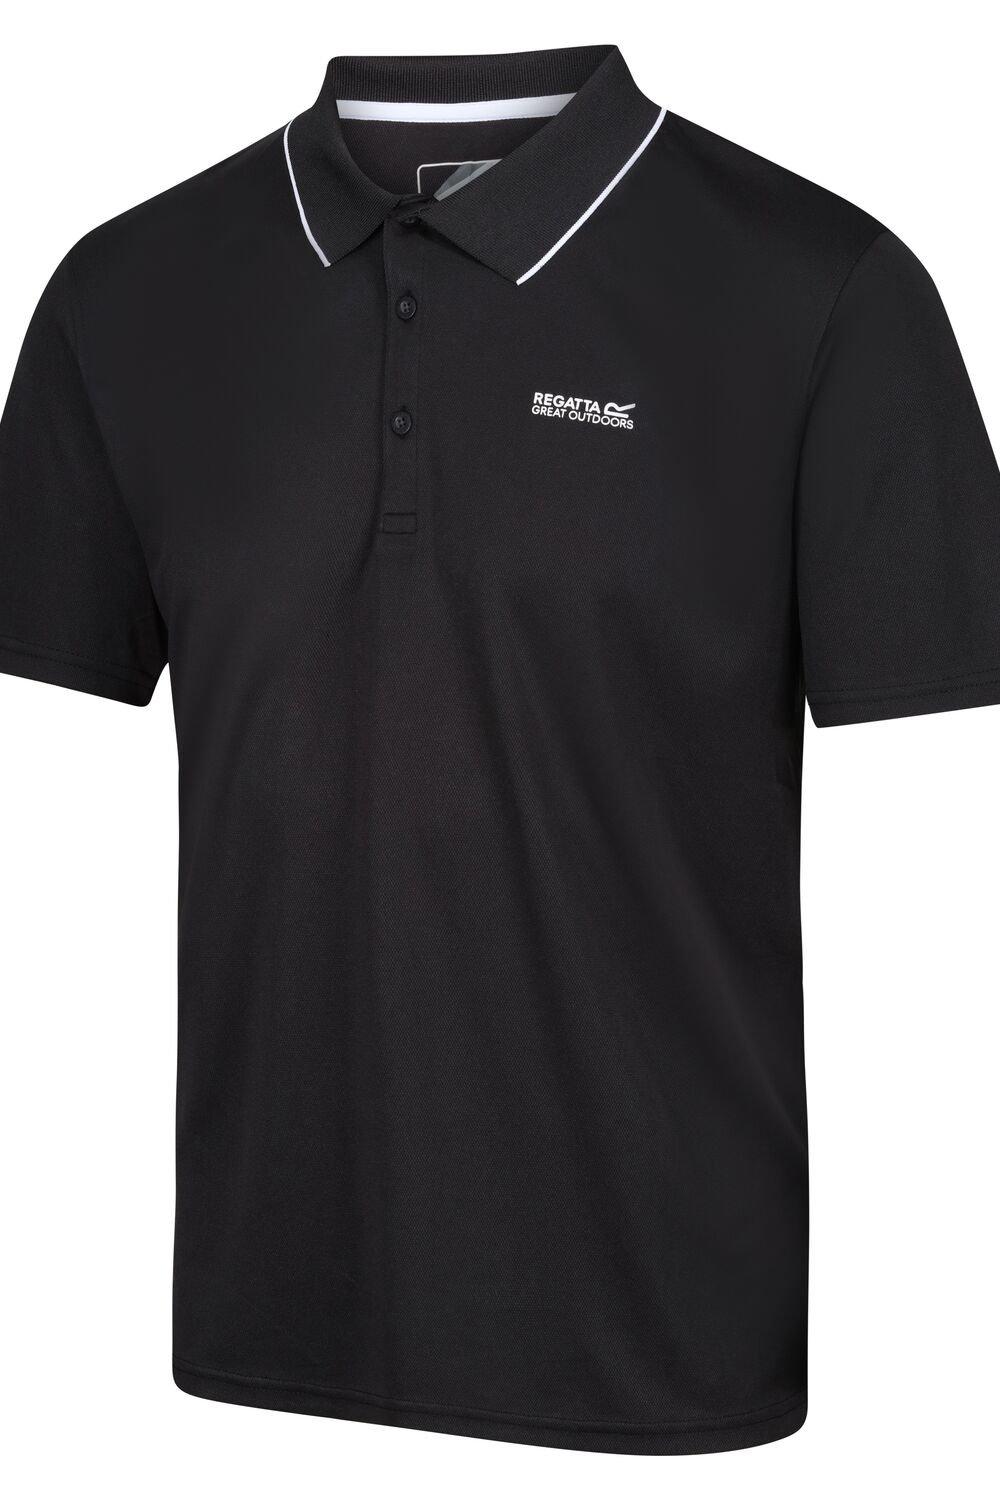 Быстросохнущая рубашка-поло из полиэстера Maverik V с короткими рукавами Regatta, черный